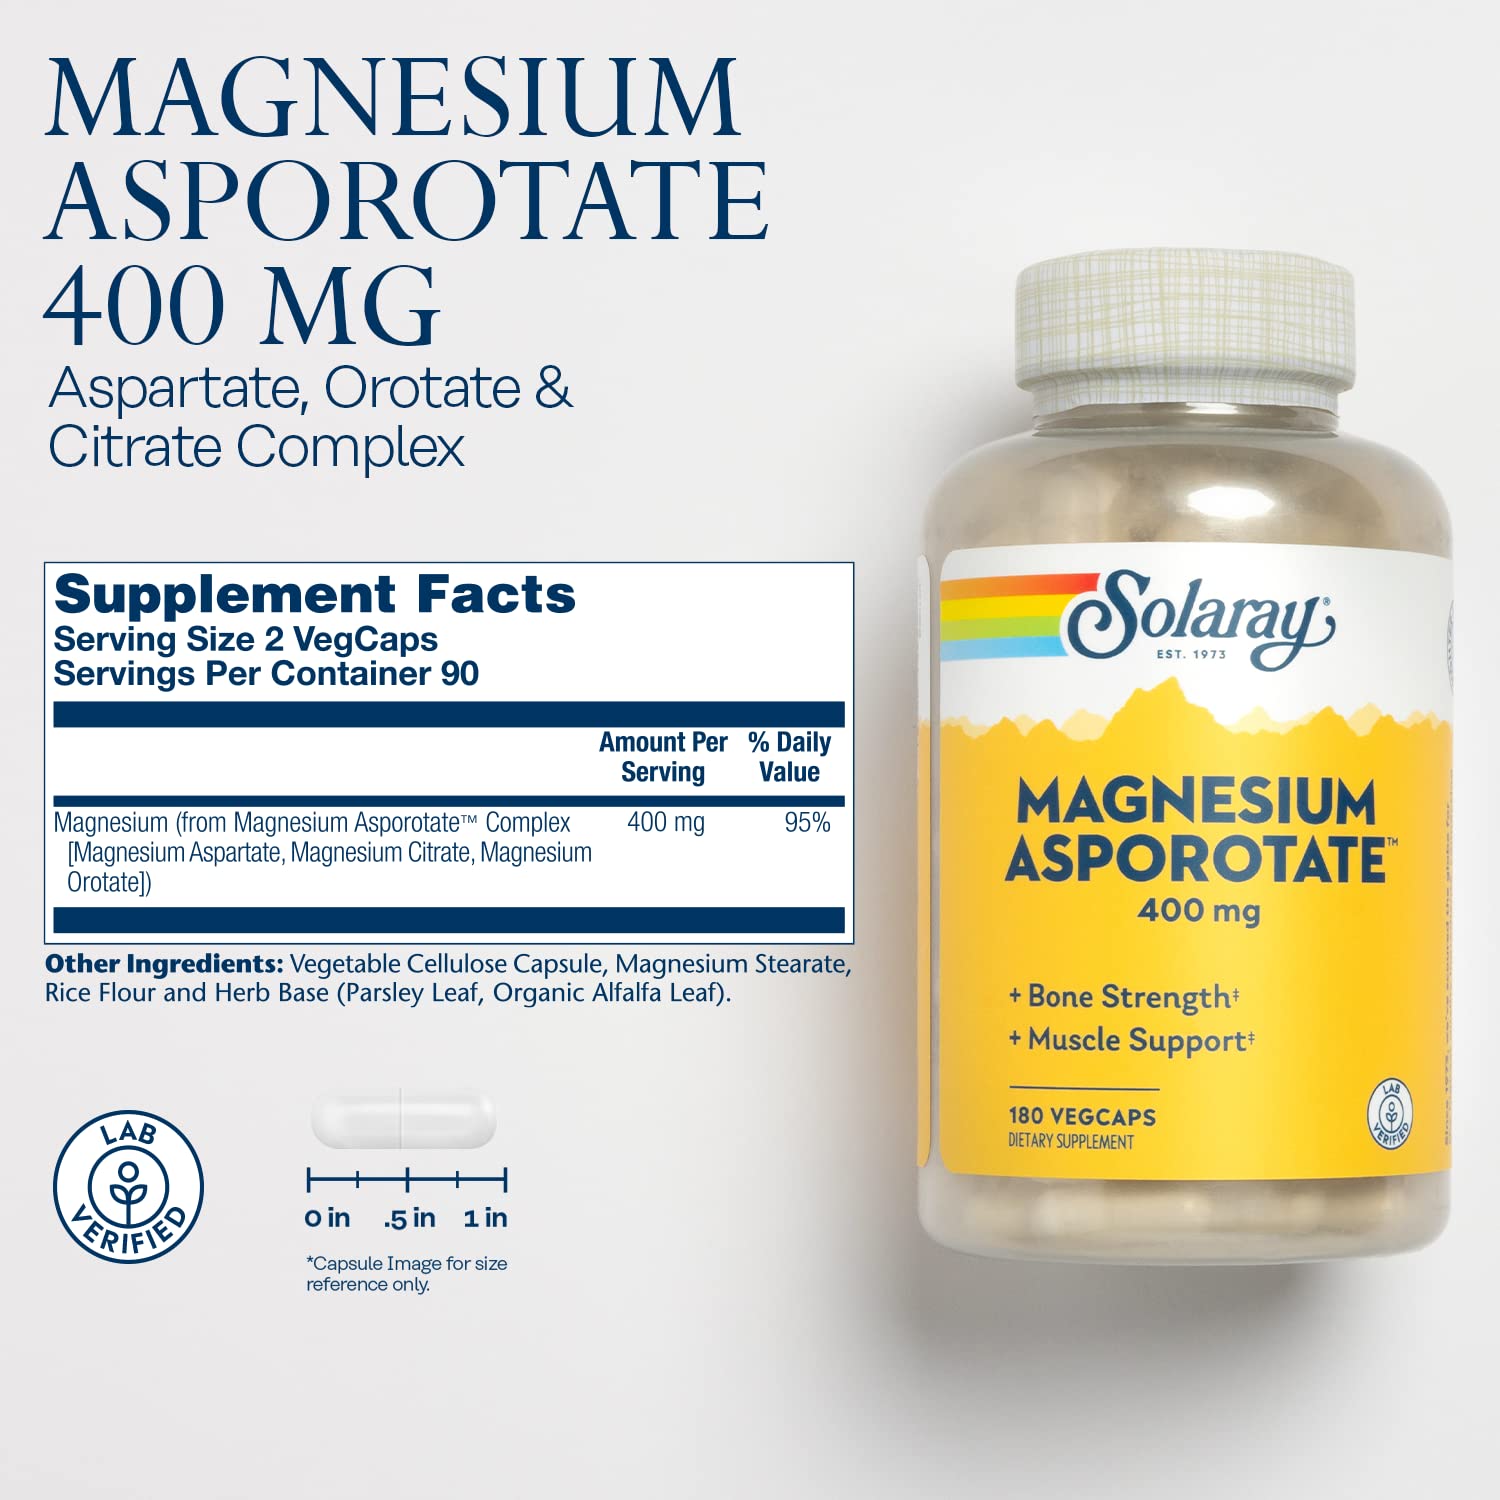 Solaray - Magnesium Asporotate 180 Veg Caps